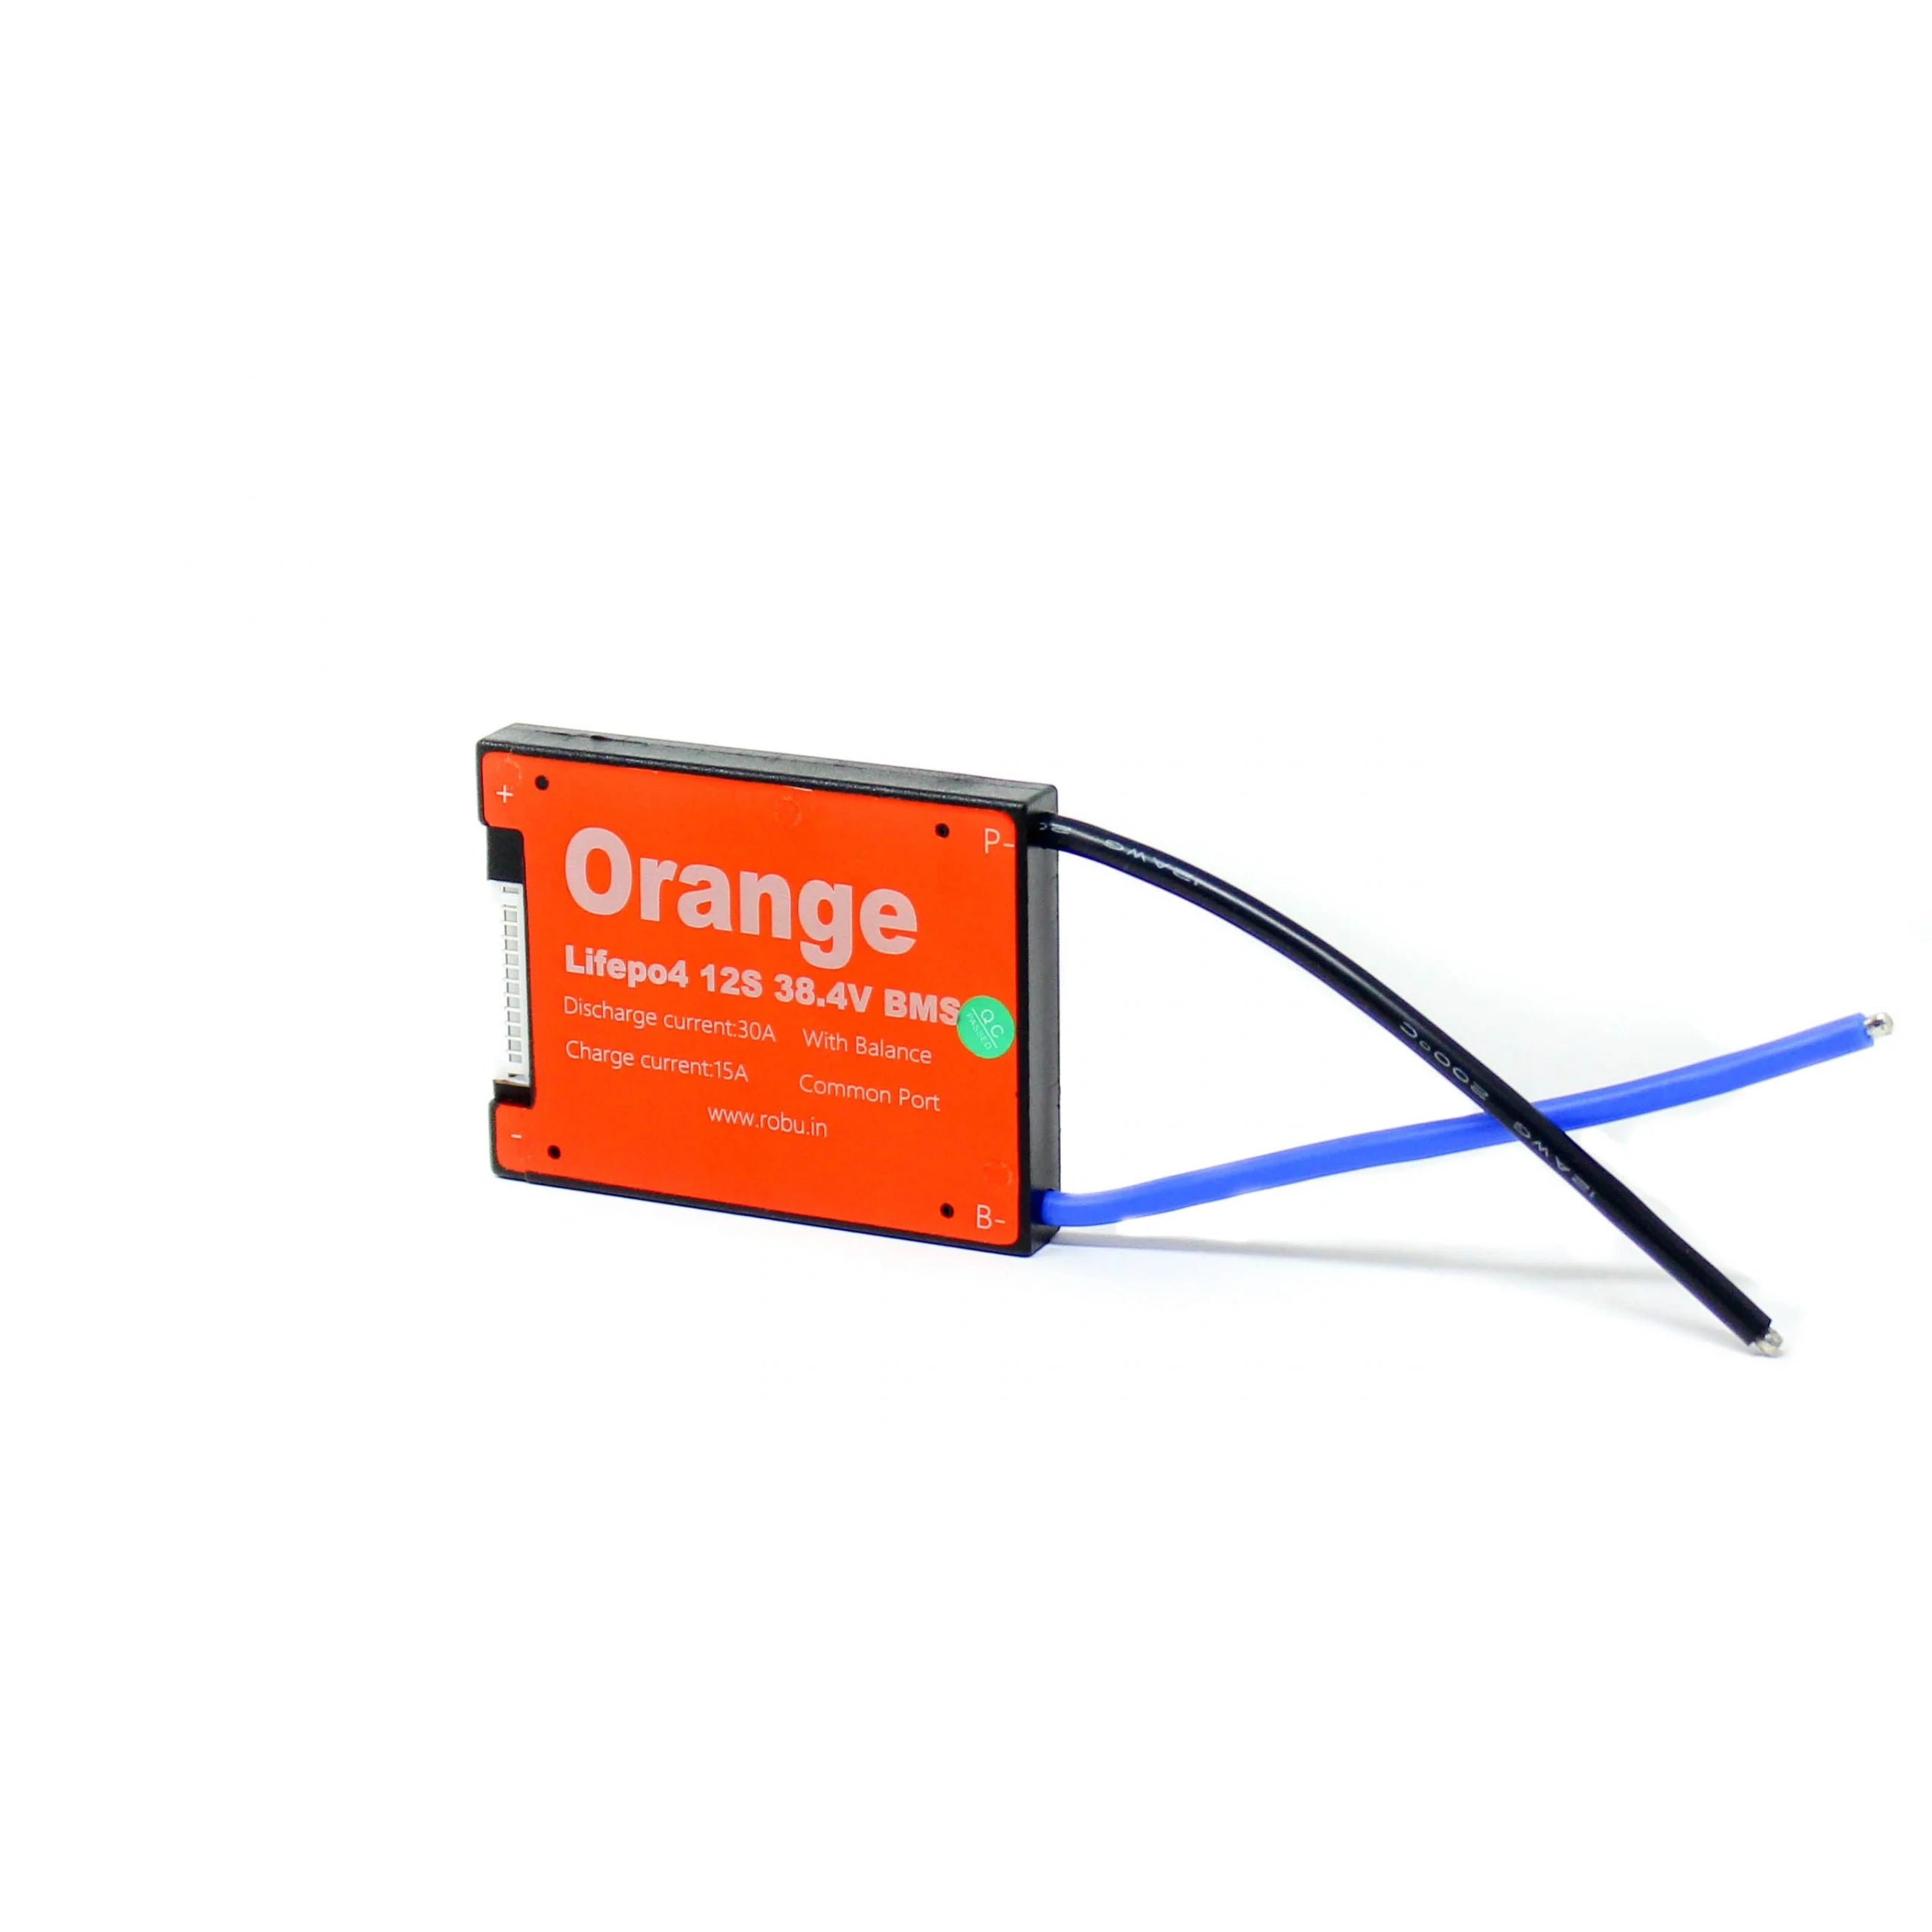 Orange Lifepo4 12S 38.4V 30A Battary Management System